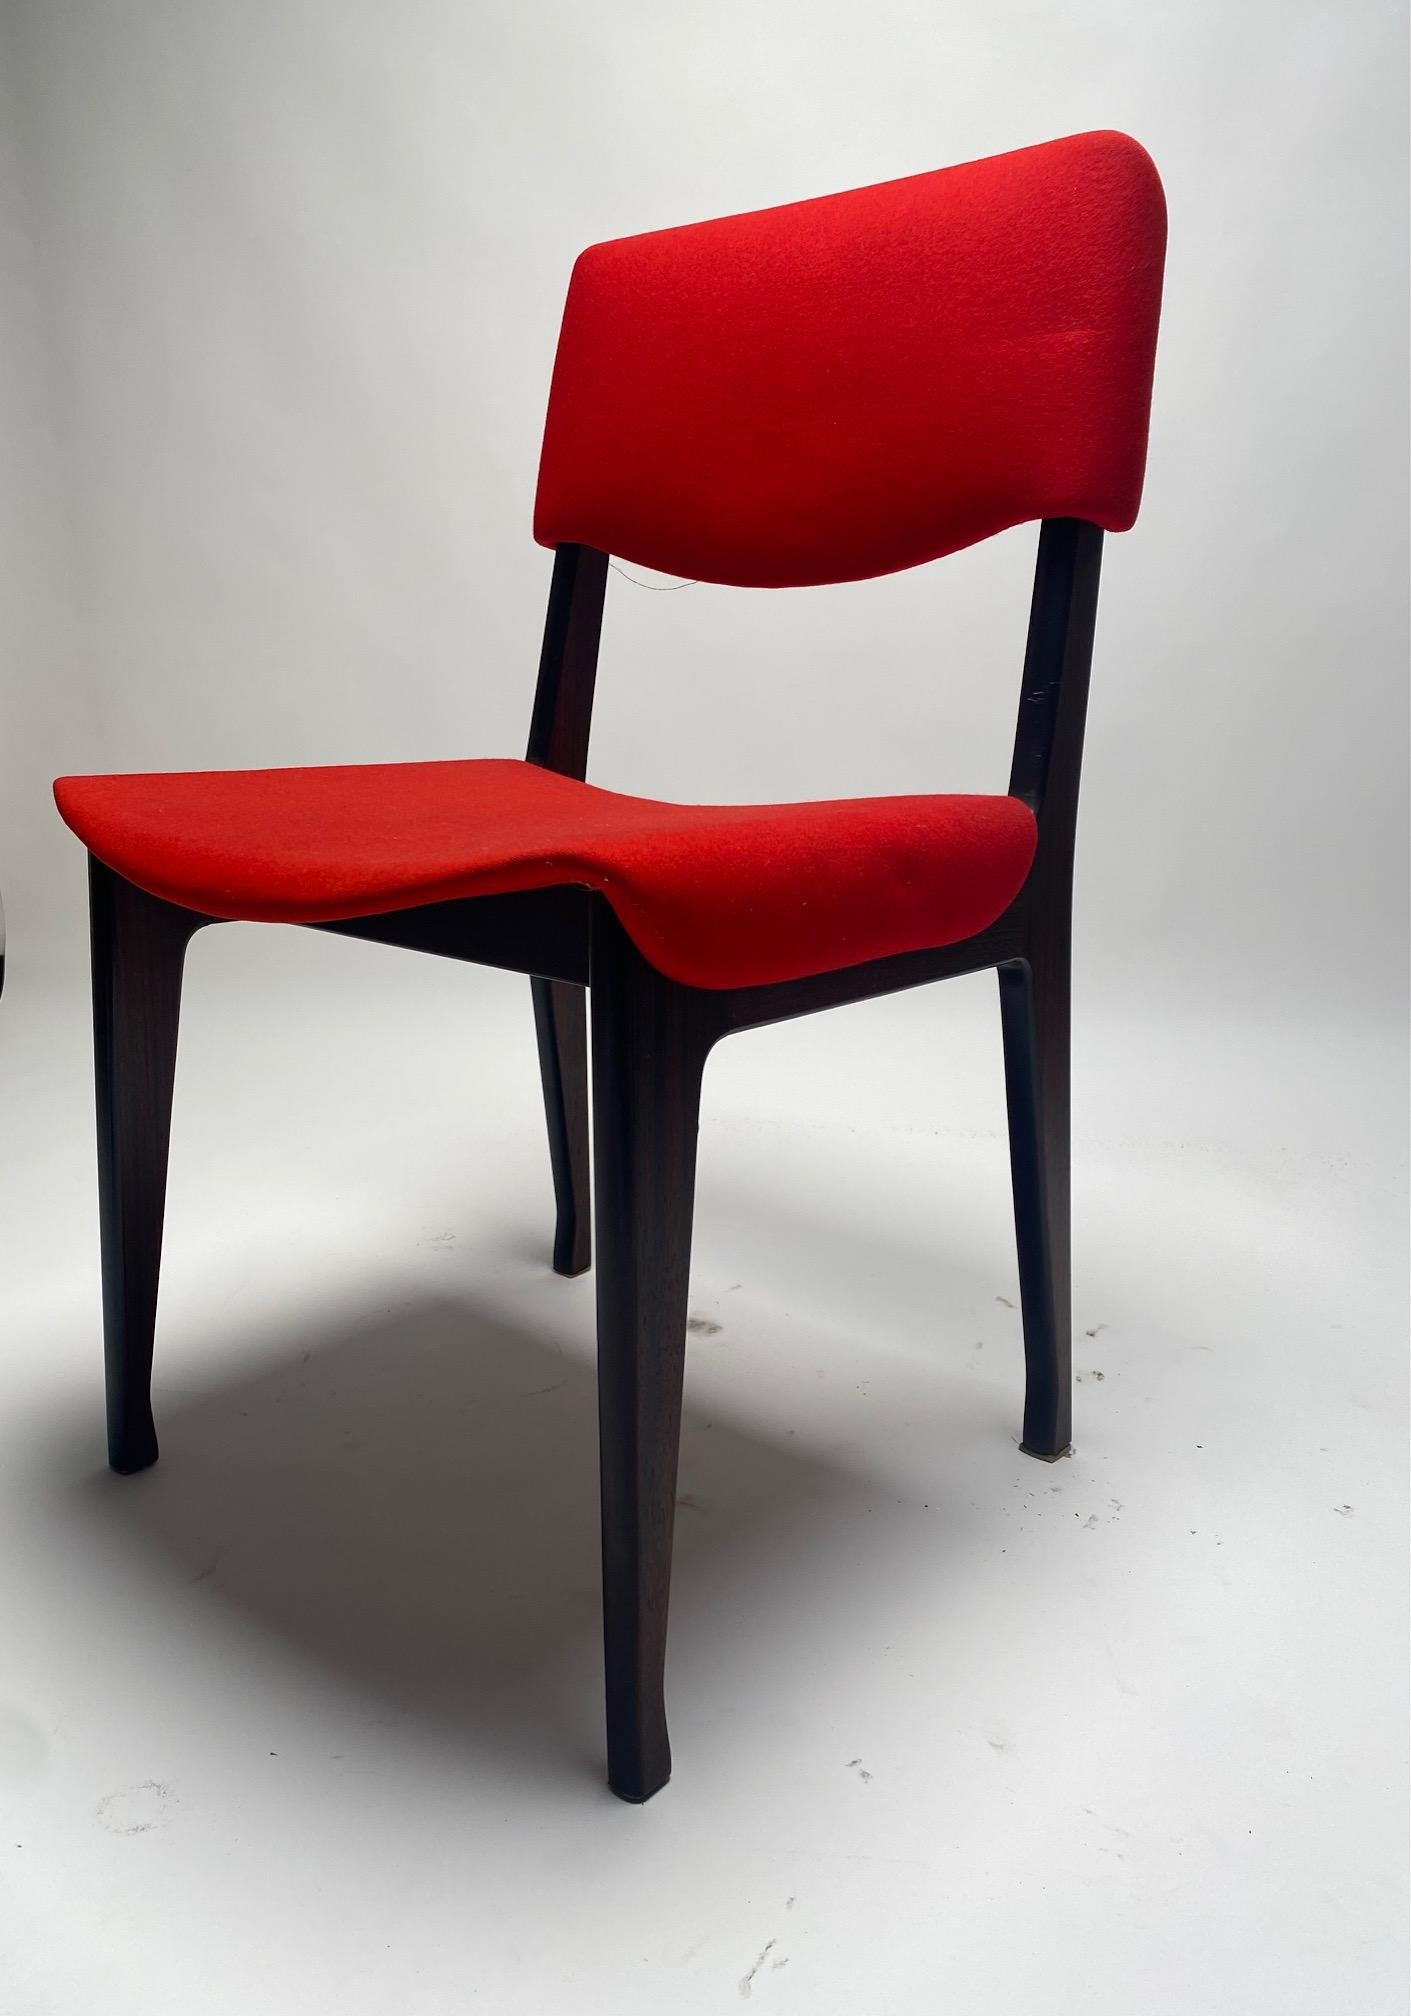 Satz von vier Stühlen von Ico Parisi für Mim, Italien, 1960er Jahre.

Vier Stühle mit Holzgestell und roten Stoffpolstern, entworfen von Ico Parisi für die Firma MIM in Rom. Ein eleganter und bequemer Stuhl von einem der bedeutendsten italienischen